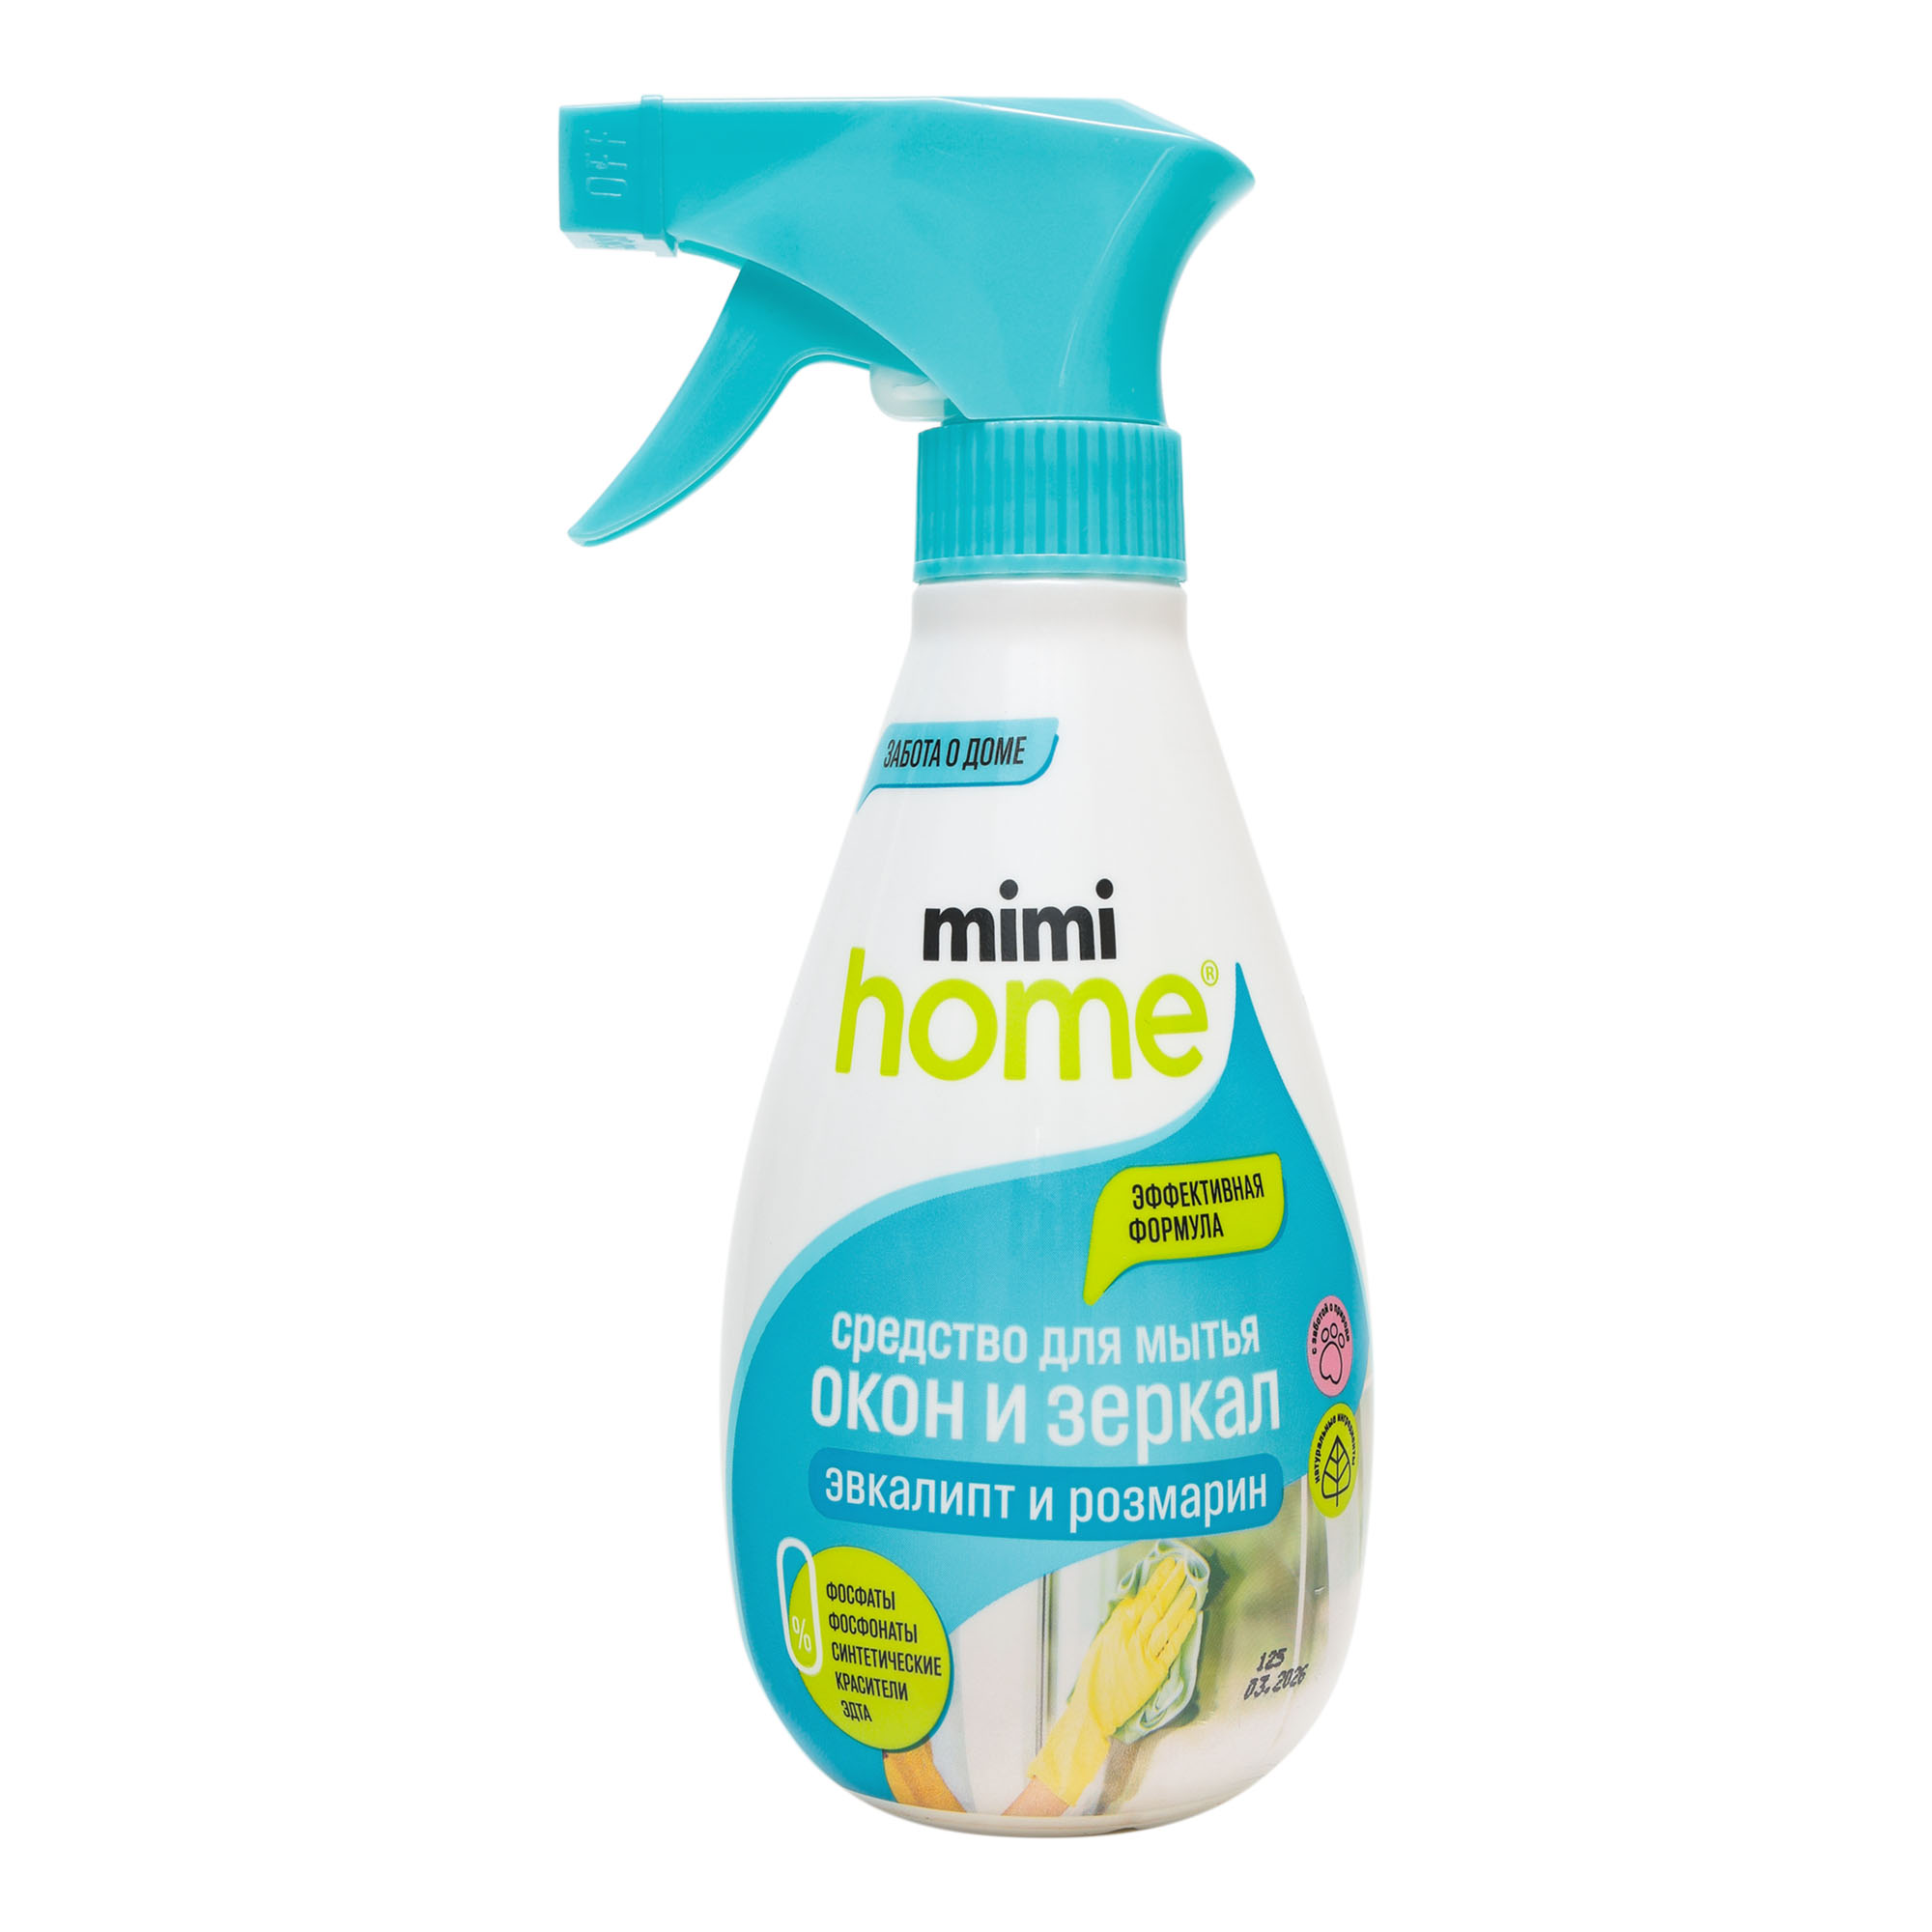 Средство для мытья окон Mimi Home Эвкалипт и розмарин 370 мл моющее средство для мрамора и натурального камня hg